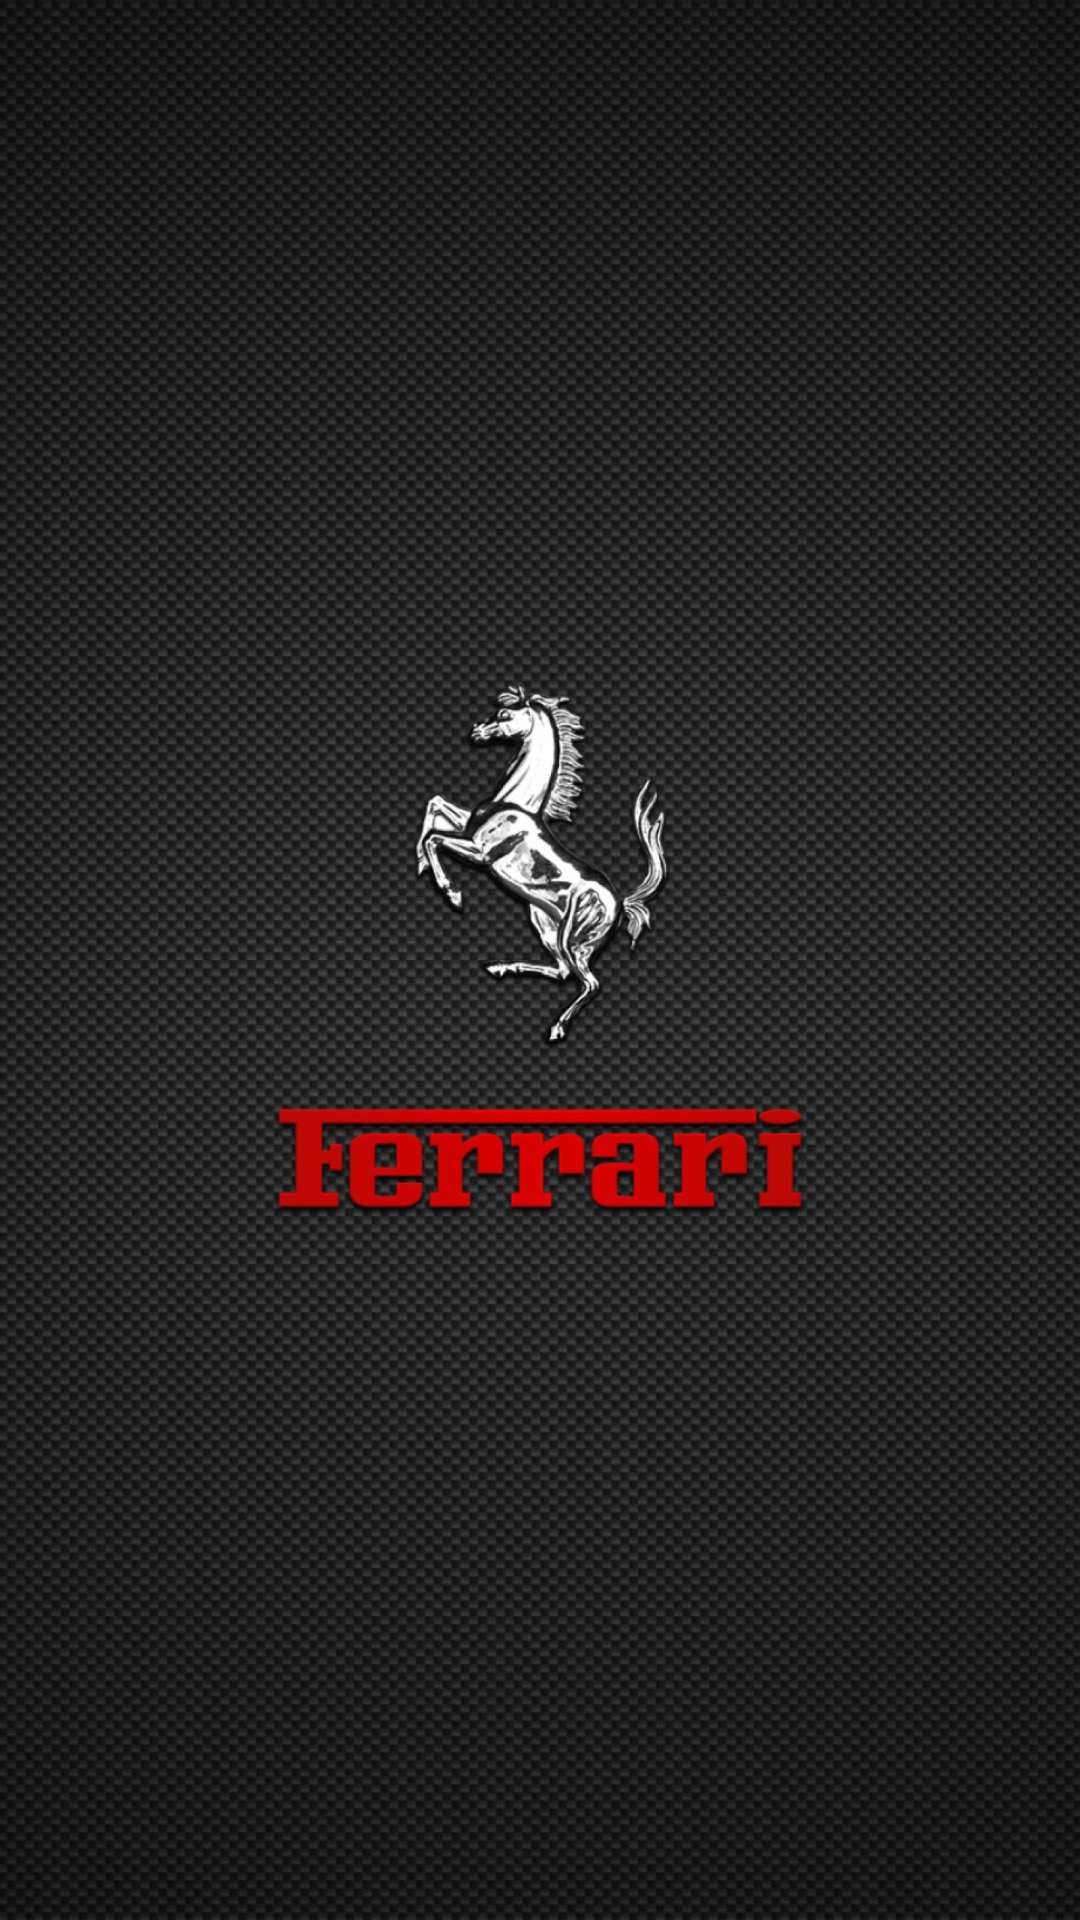 Sfondi Ferrari Logo 1080x1920